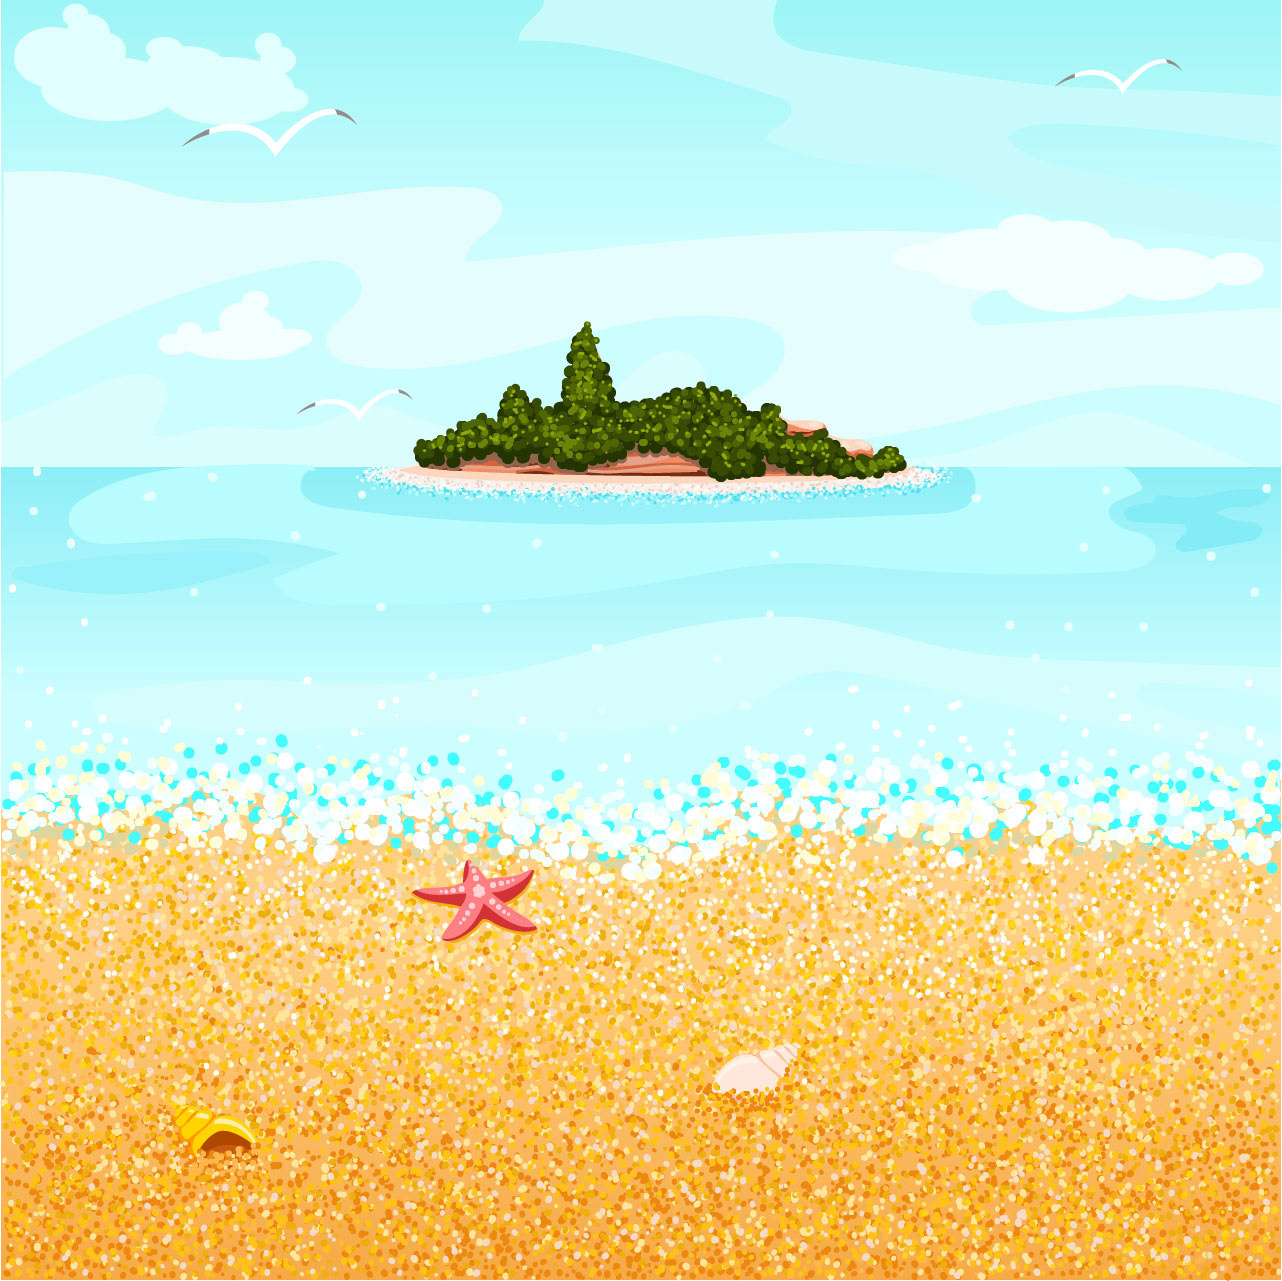 Game Backgrund "Beach". https://www.gamedevmarket.net/asset/beach-2d-game-background-7545. 